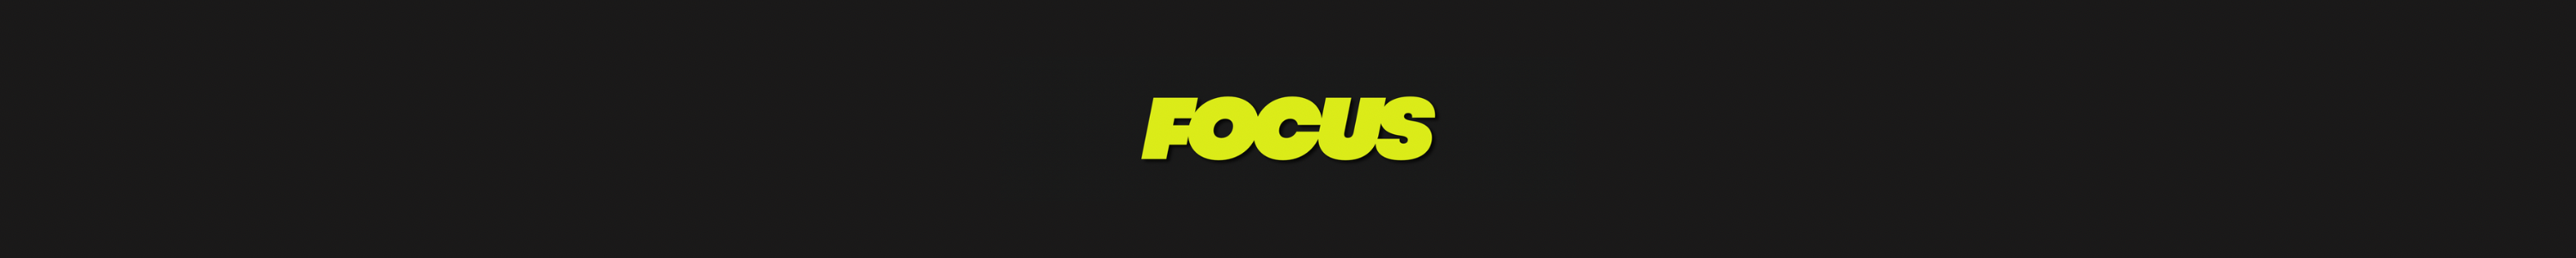 Categoria Focus